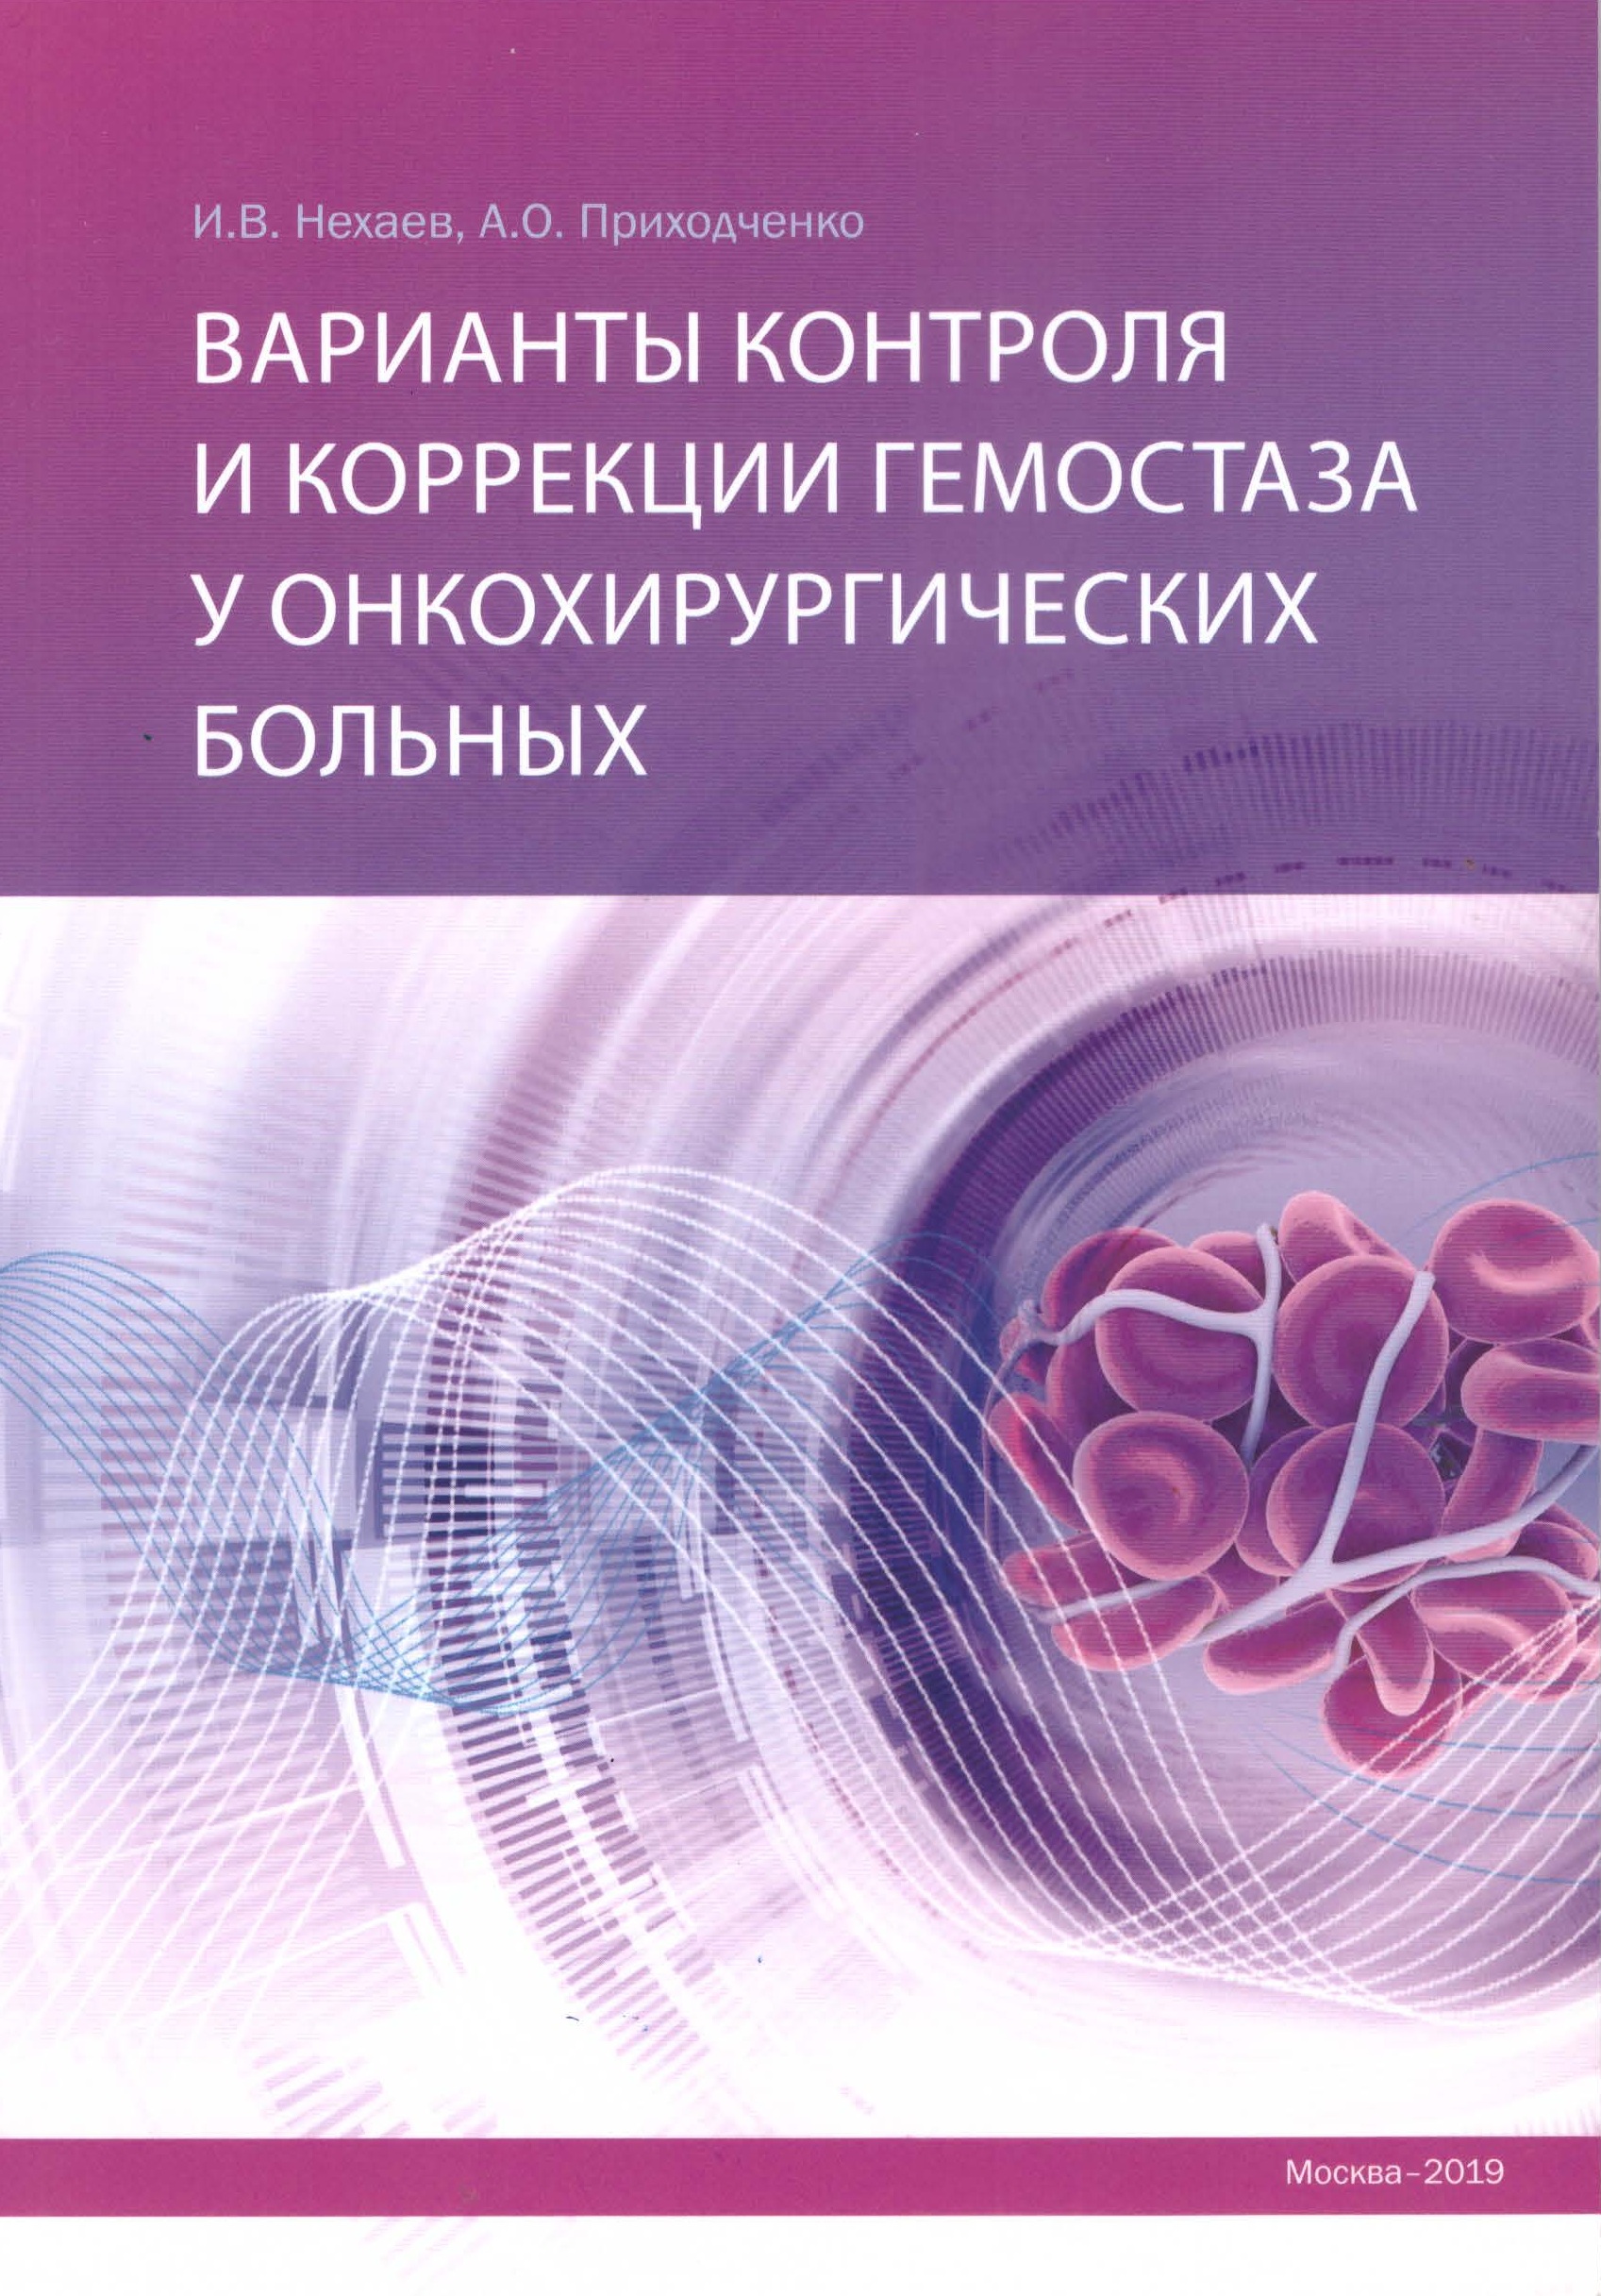 Варианты контроля и коррекции гемостаза у онкохирургических больных, 2019